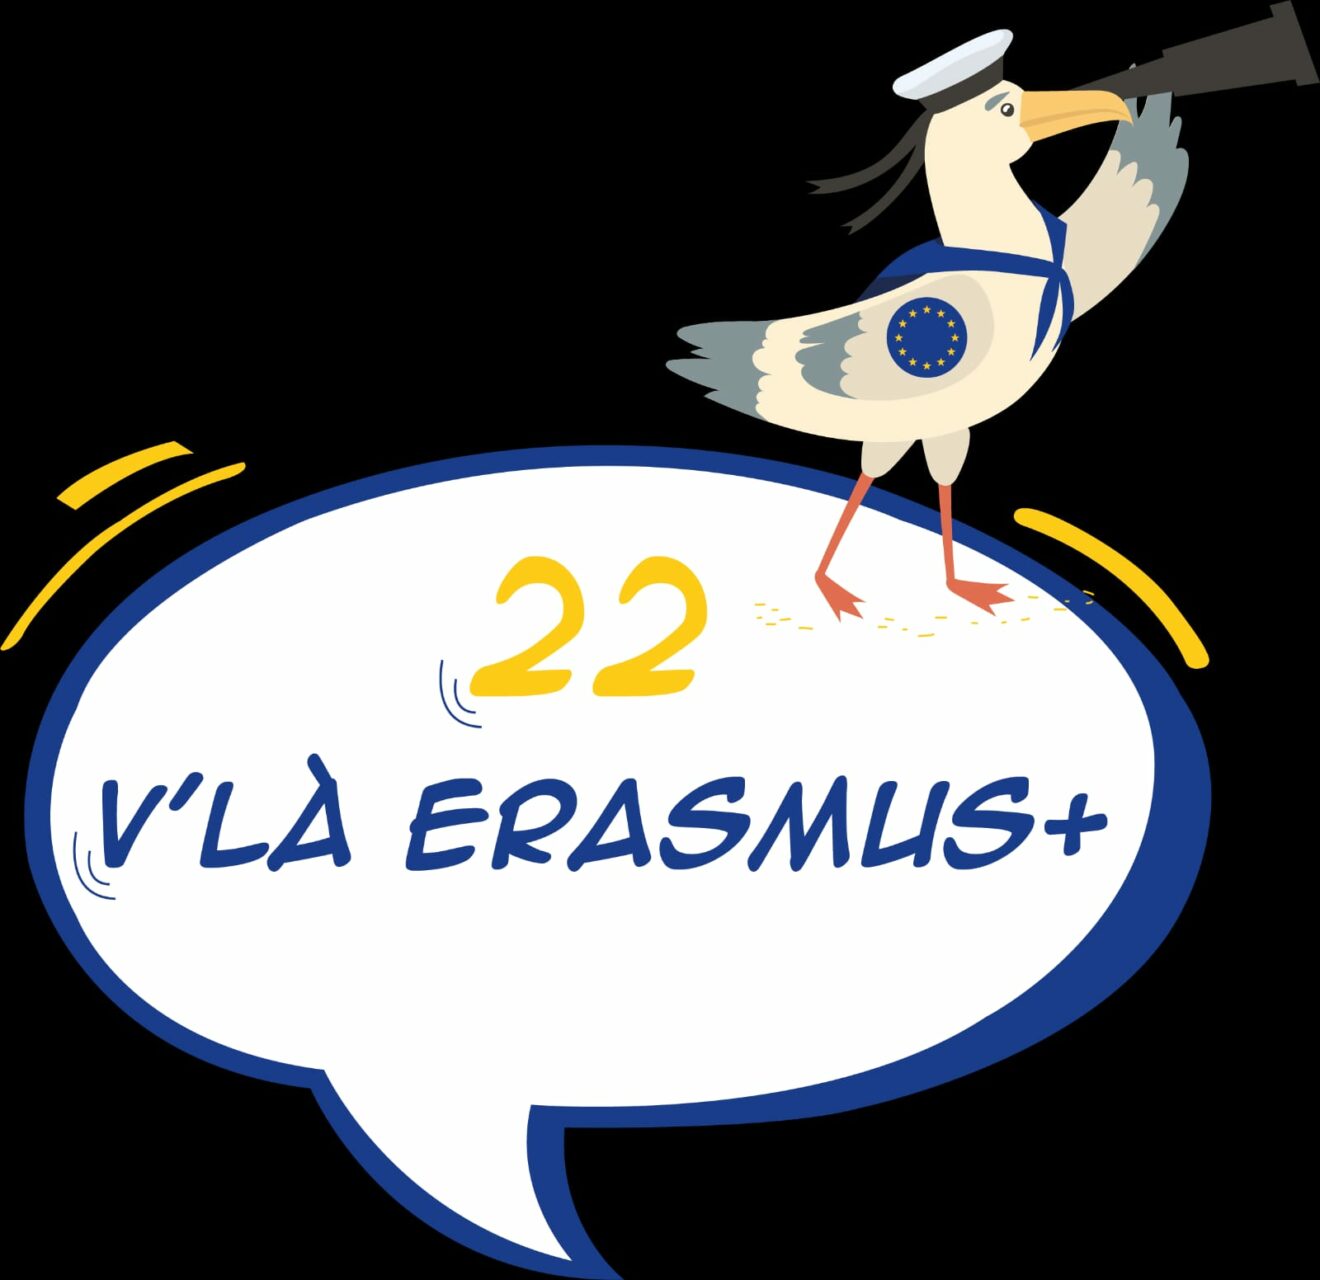 22 Vlà Erasmus + : un projet départemental mené à l'échelle européenne